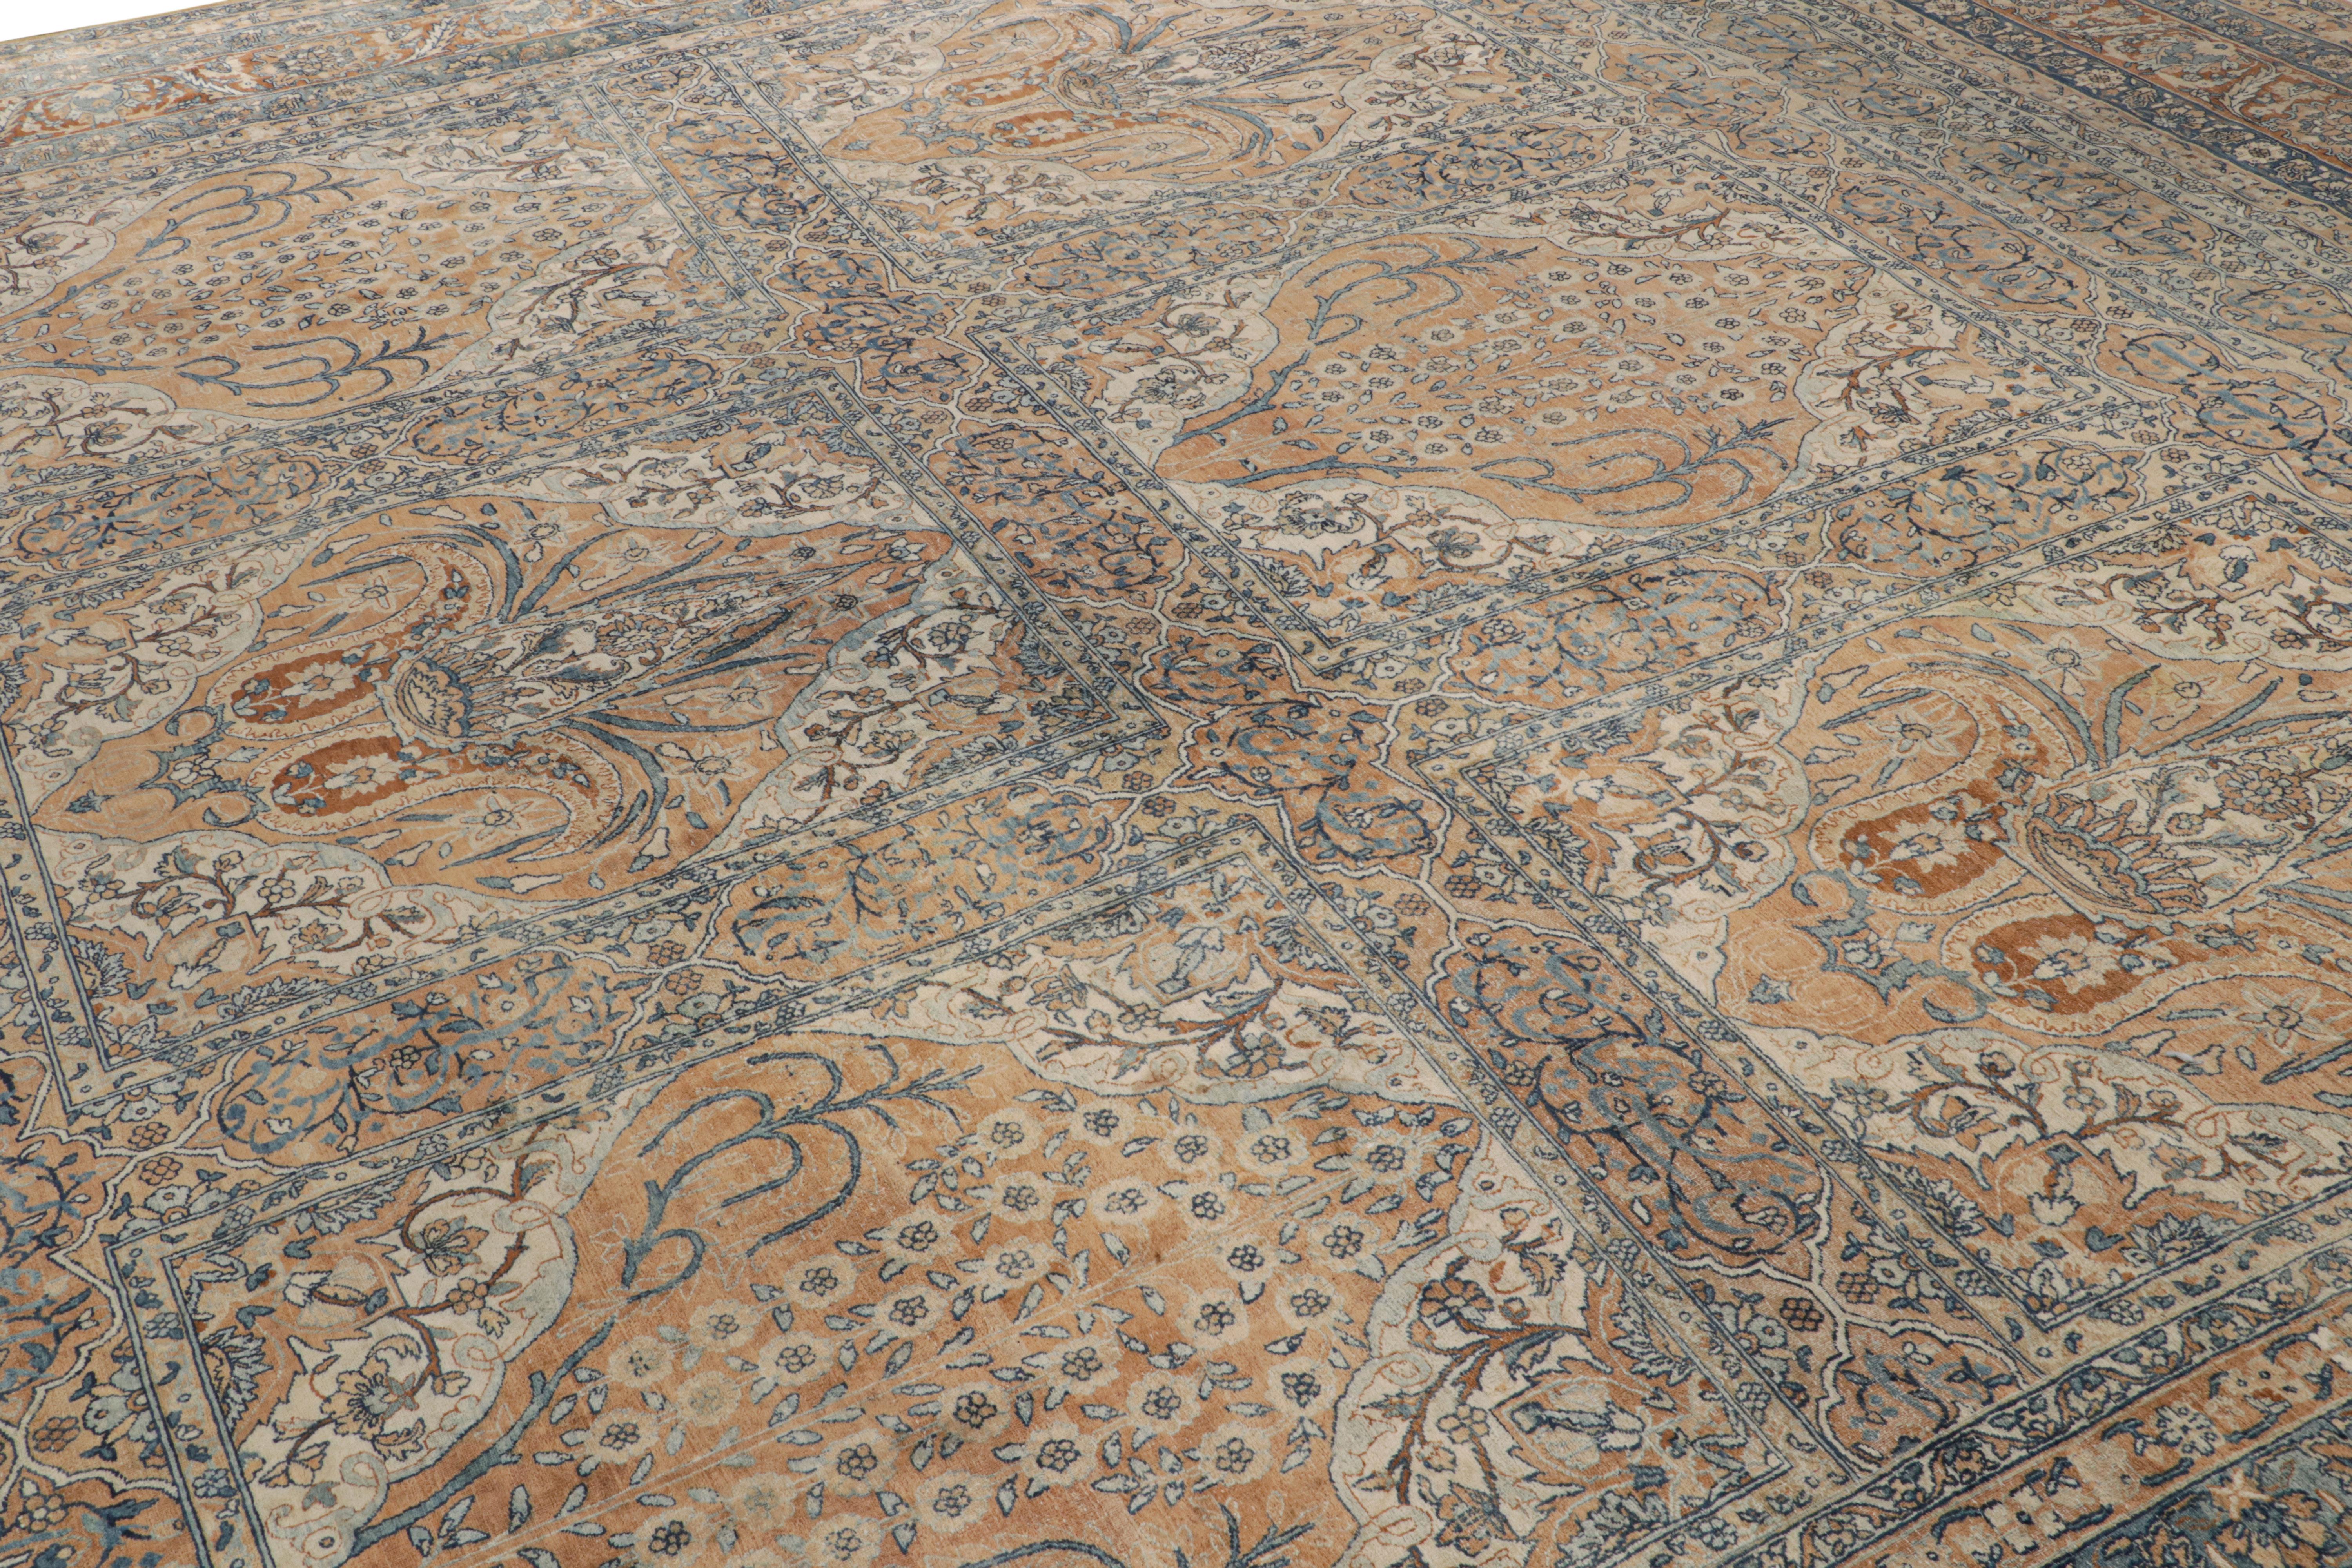 Noué à la main en laine vers 1920-1930, ce tapis carré 14x14 est un tapis persan ancien très spécial de provenance Kerman.

Sur le Design :

Le tapis arbore des tons dorés et bleus qui soulignent les motifs floraux du style all over. Le design